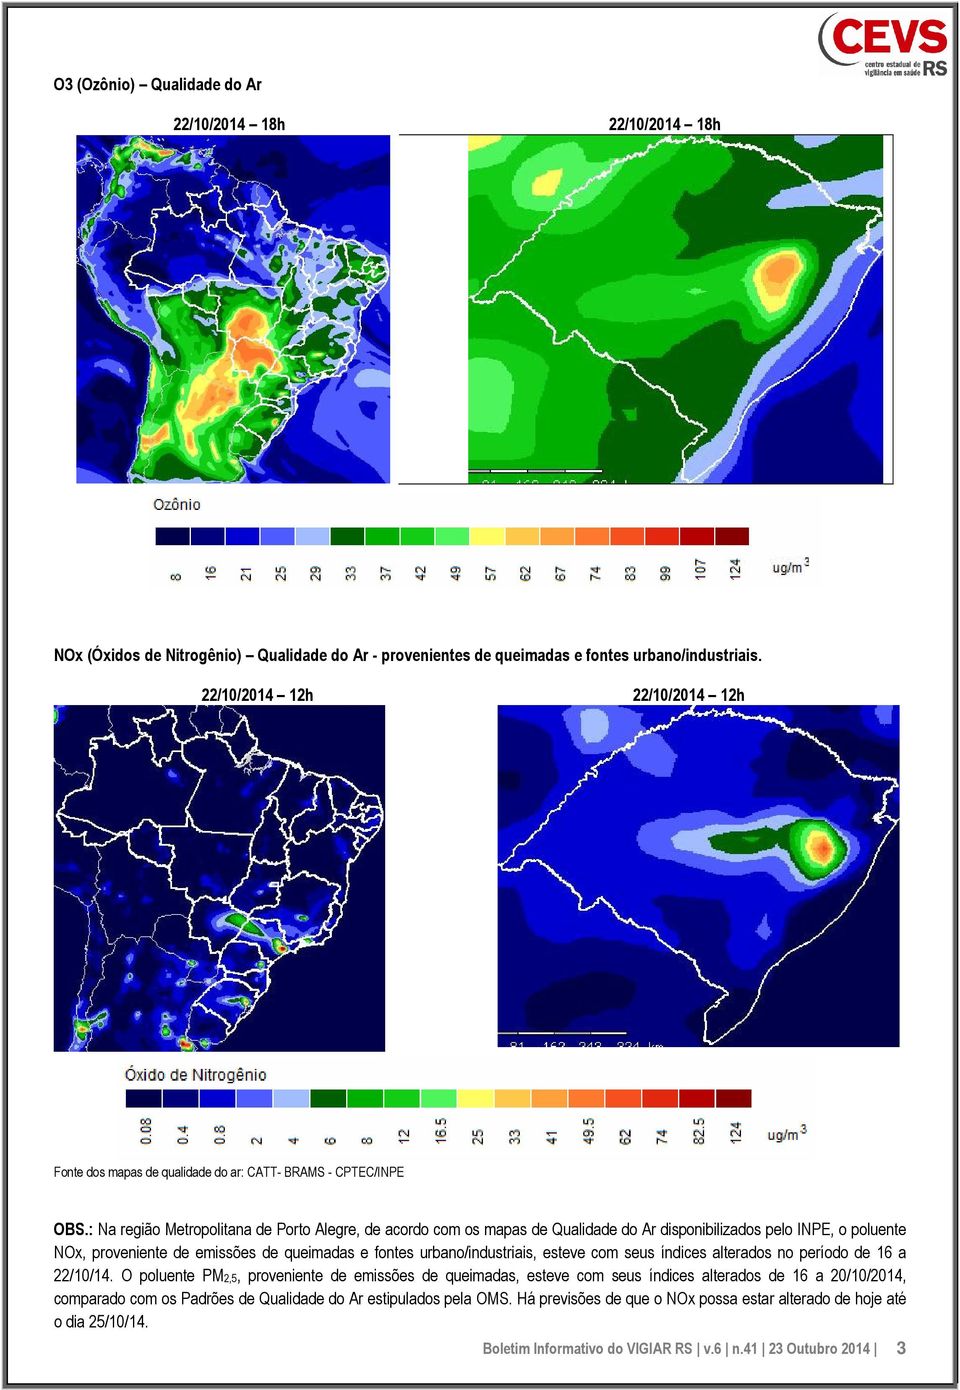 : Na região Metropolitana de Porto Alegre, de acordo com os mapas de Qualidade do Ar disponibilizados pelo INPE, o poluente NOx, proveniente de emissões de queimadas e fontes urbano/industriais,